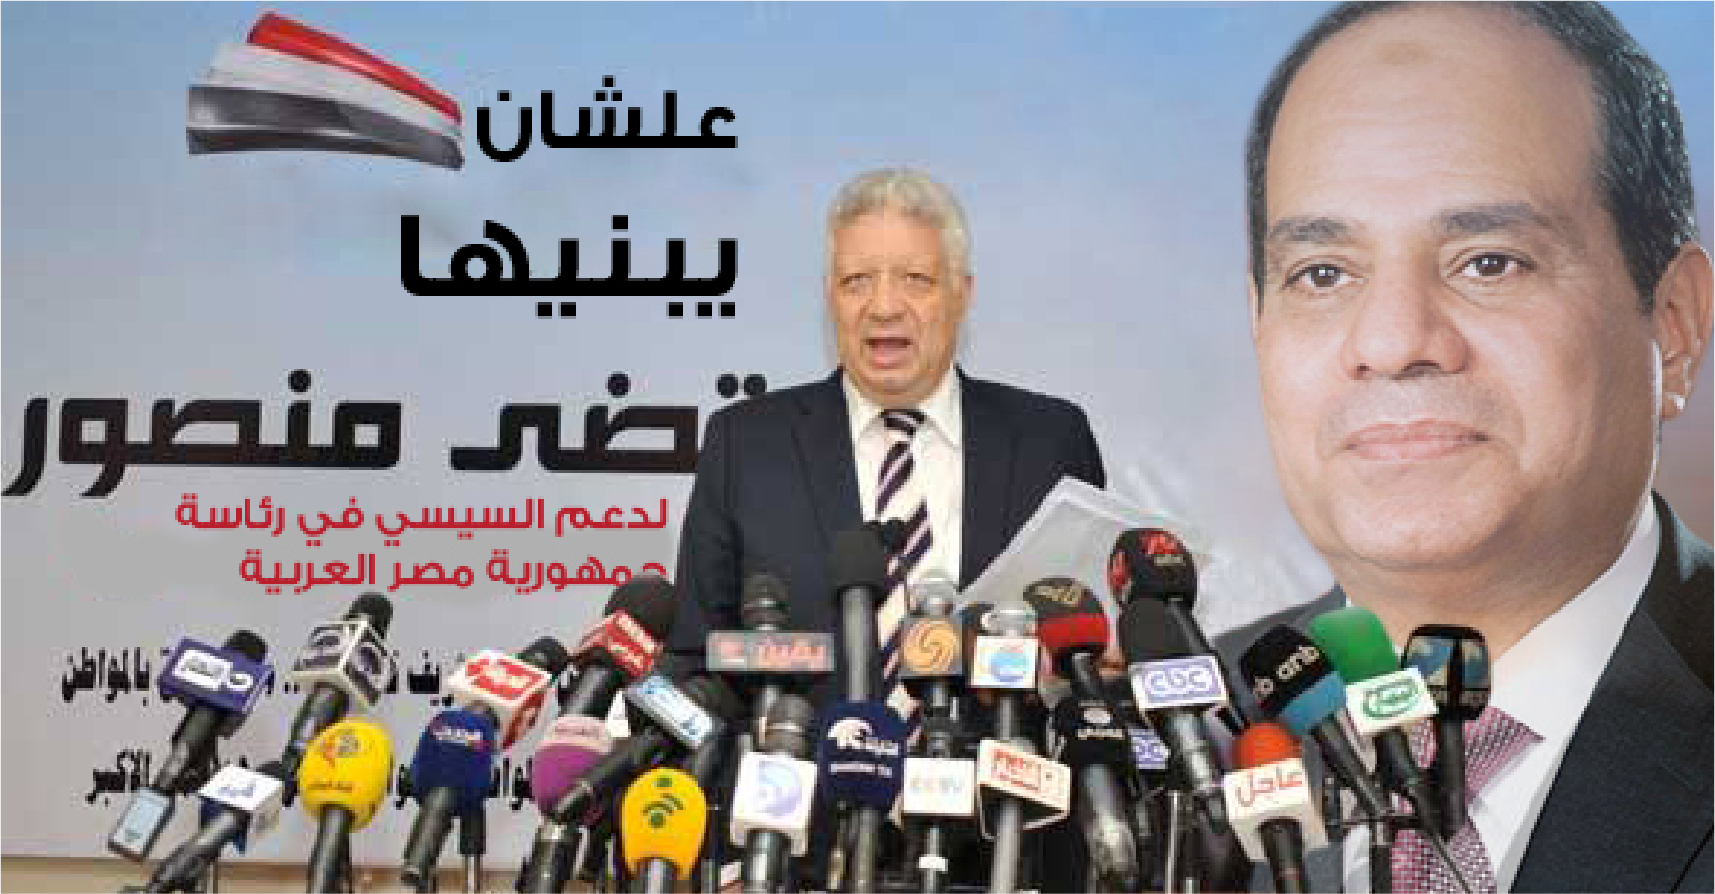 صورة مرتضى منصور يرشح نفسه للانتخابات دعماً لحملة السيسي الانتخابية